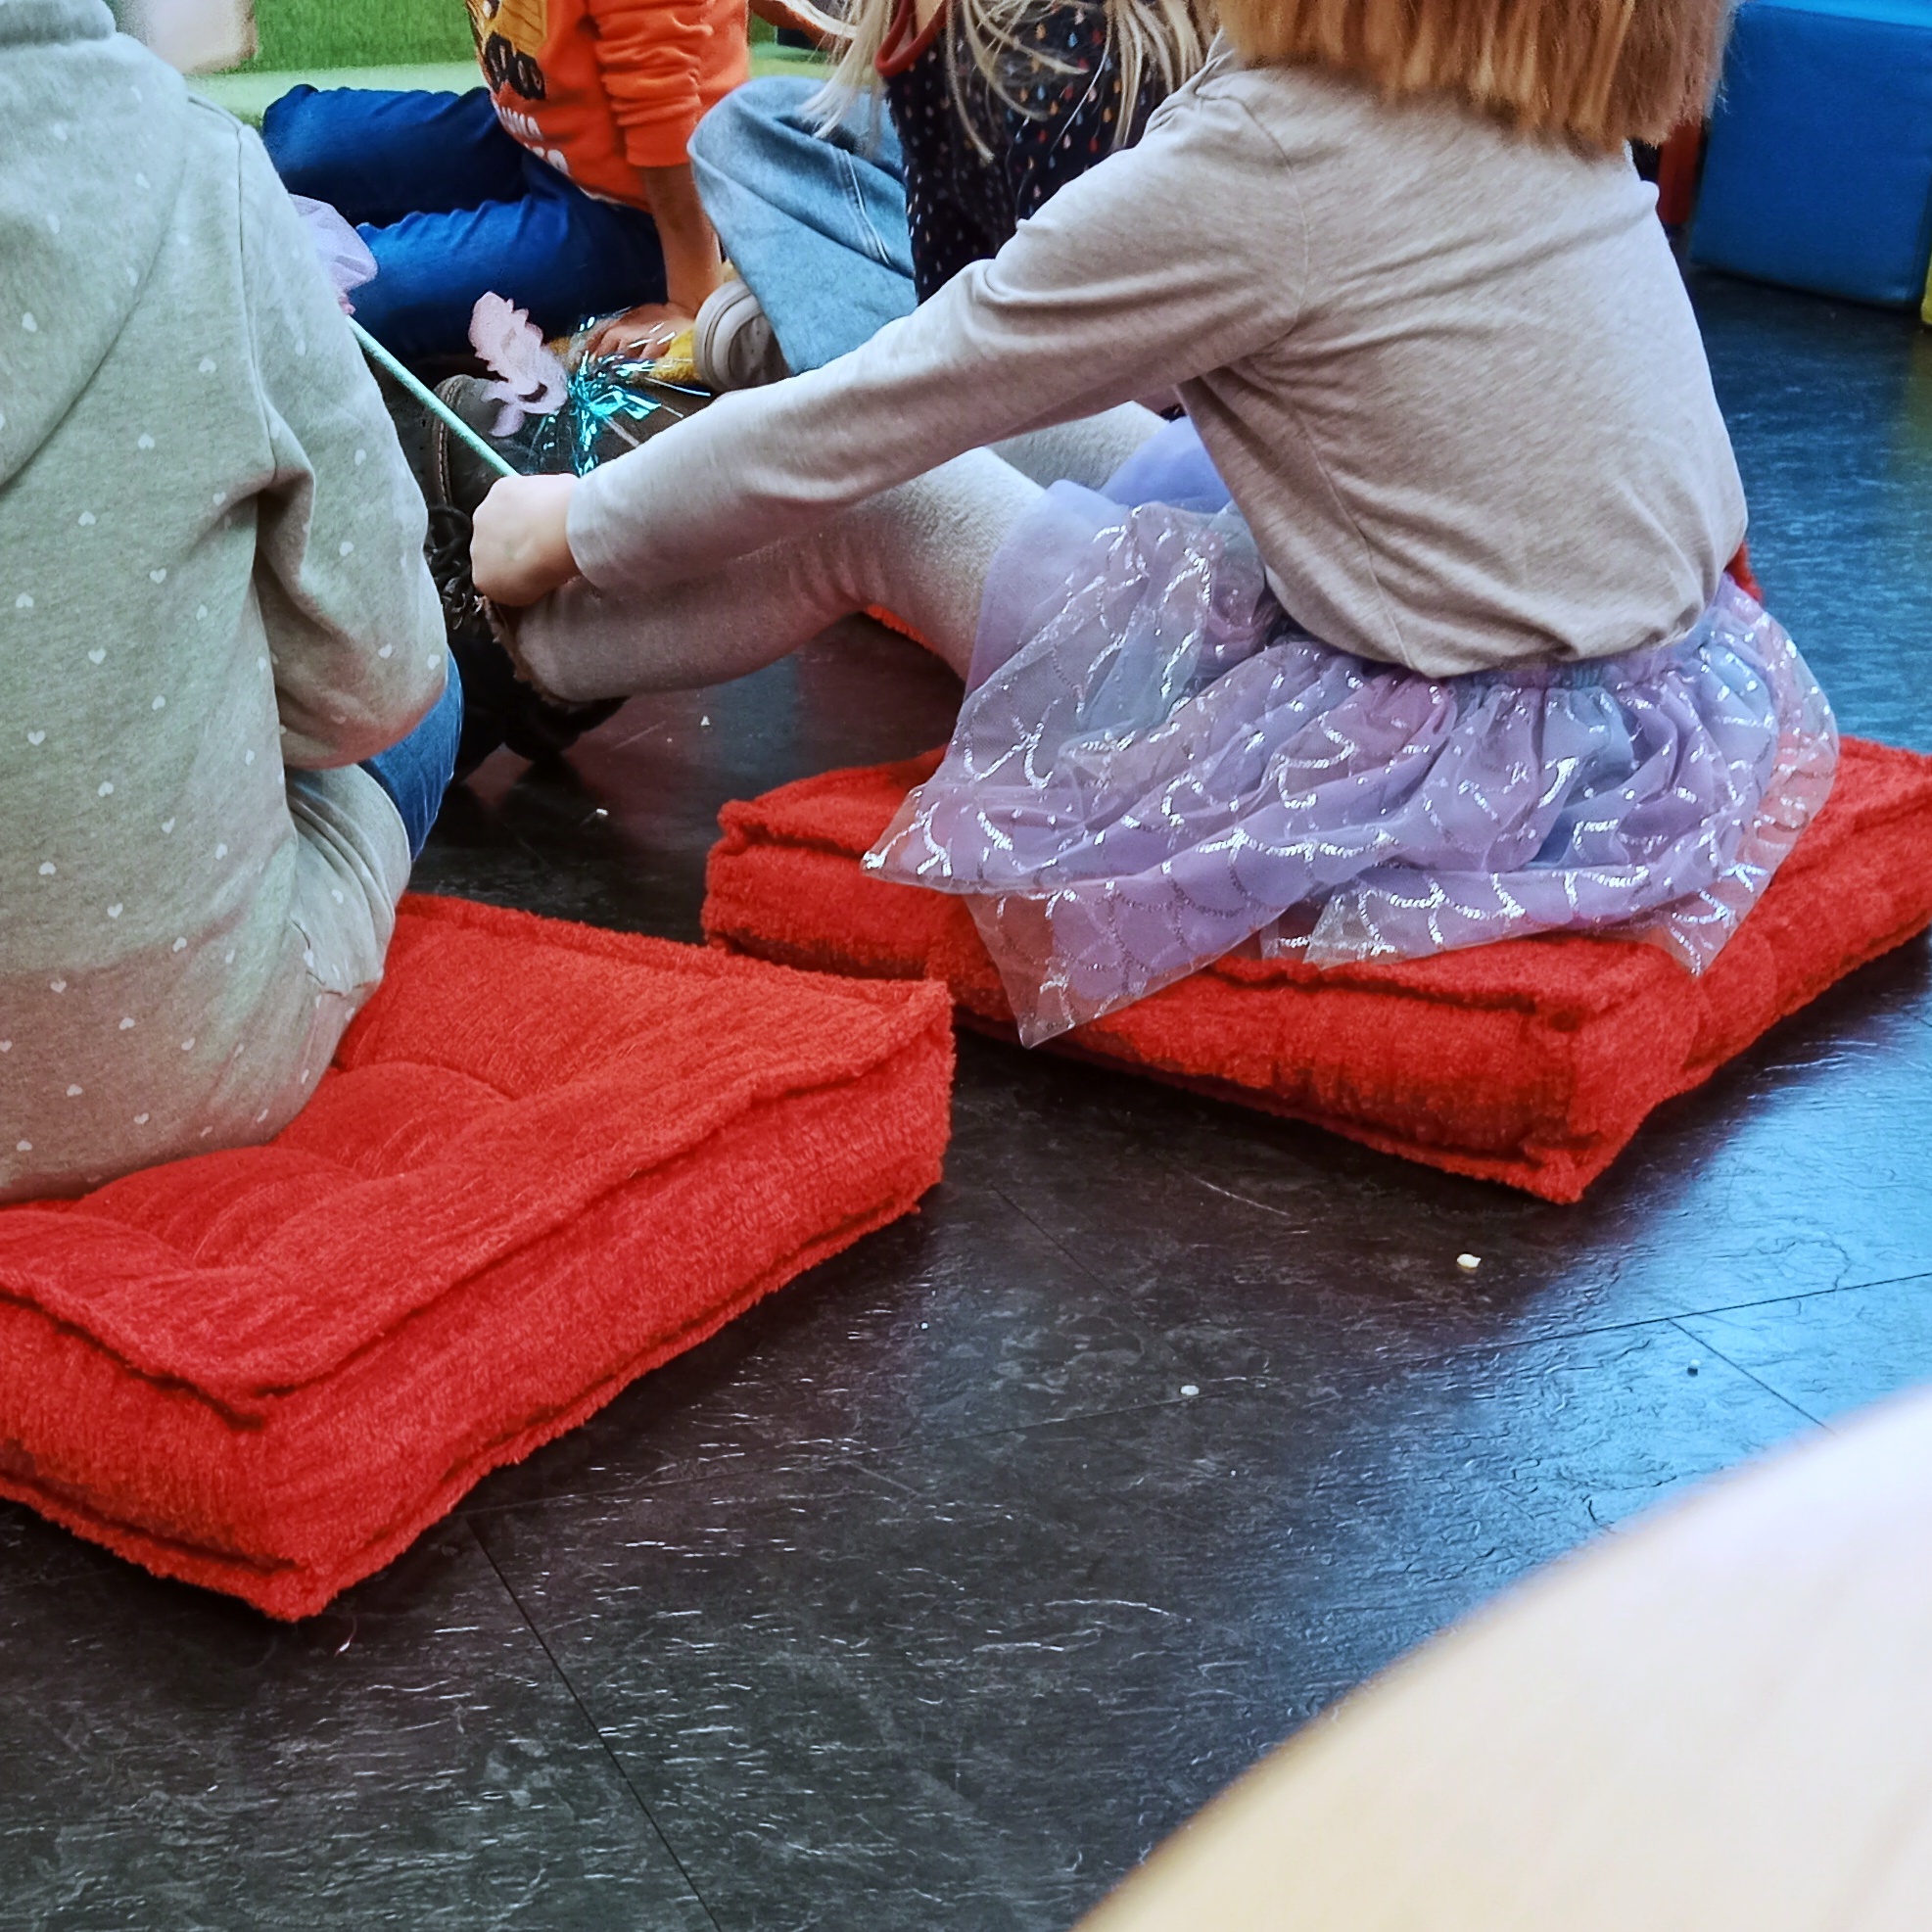 Kinder sitzen gespannt auf Bodenkissen.